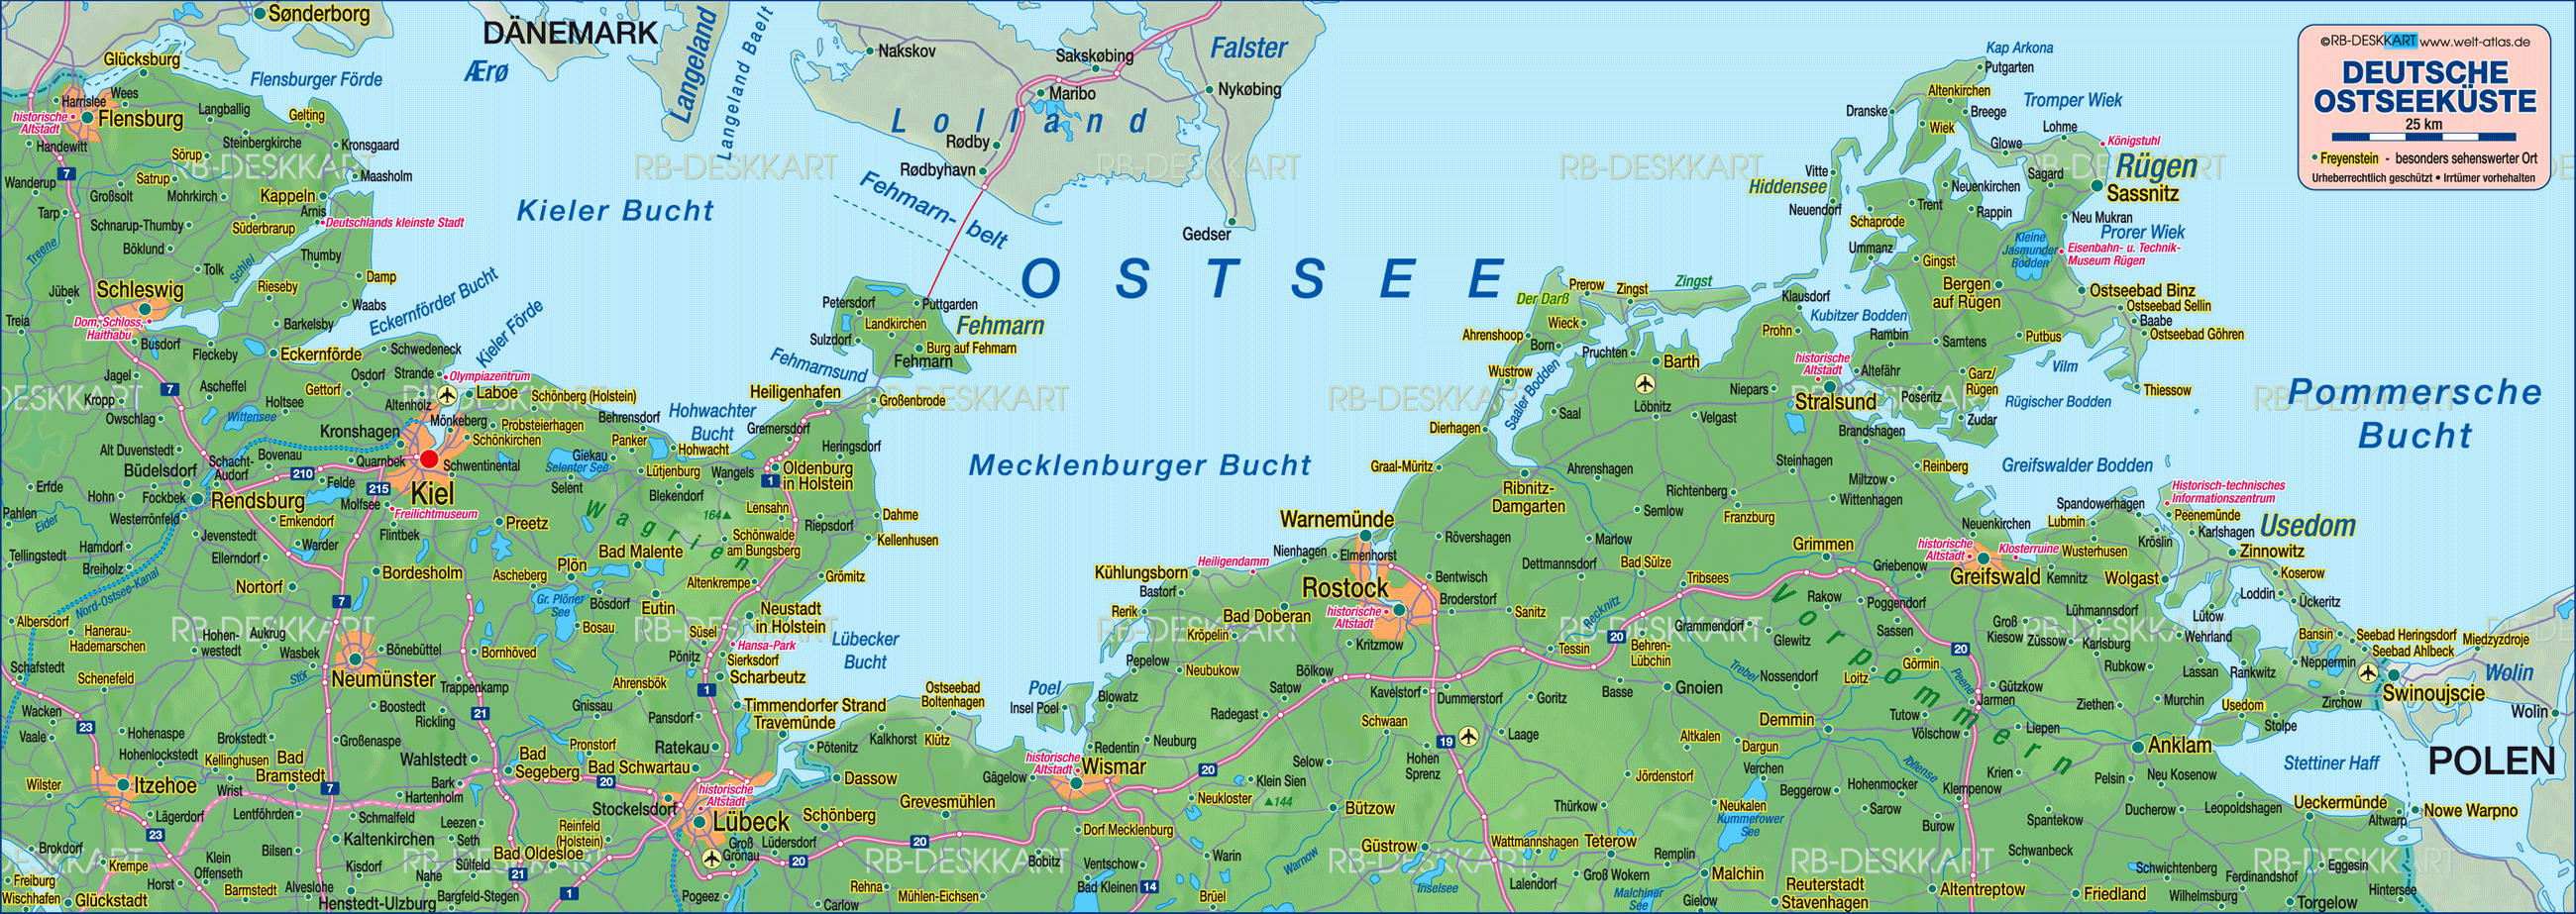 Deutsche Ostseeküste